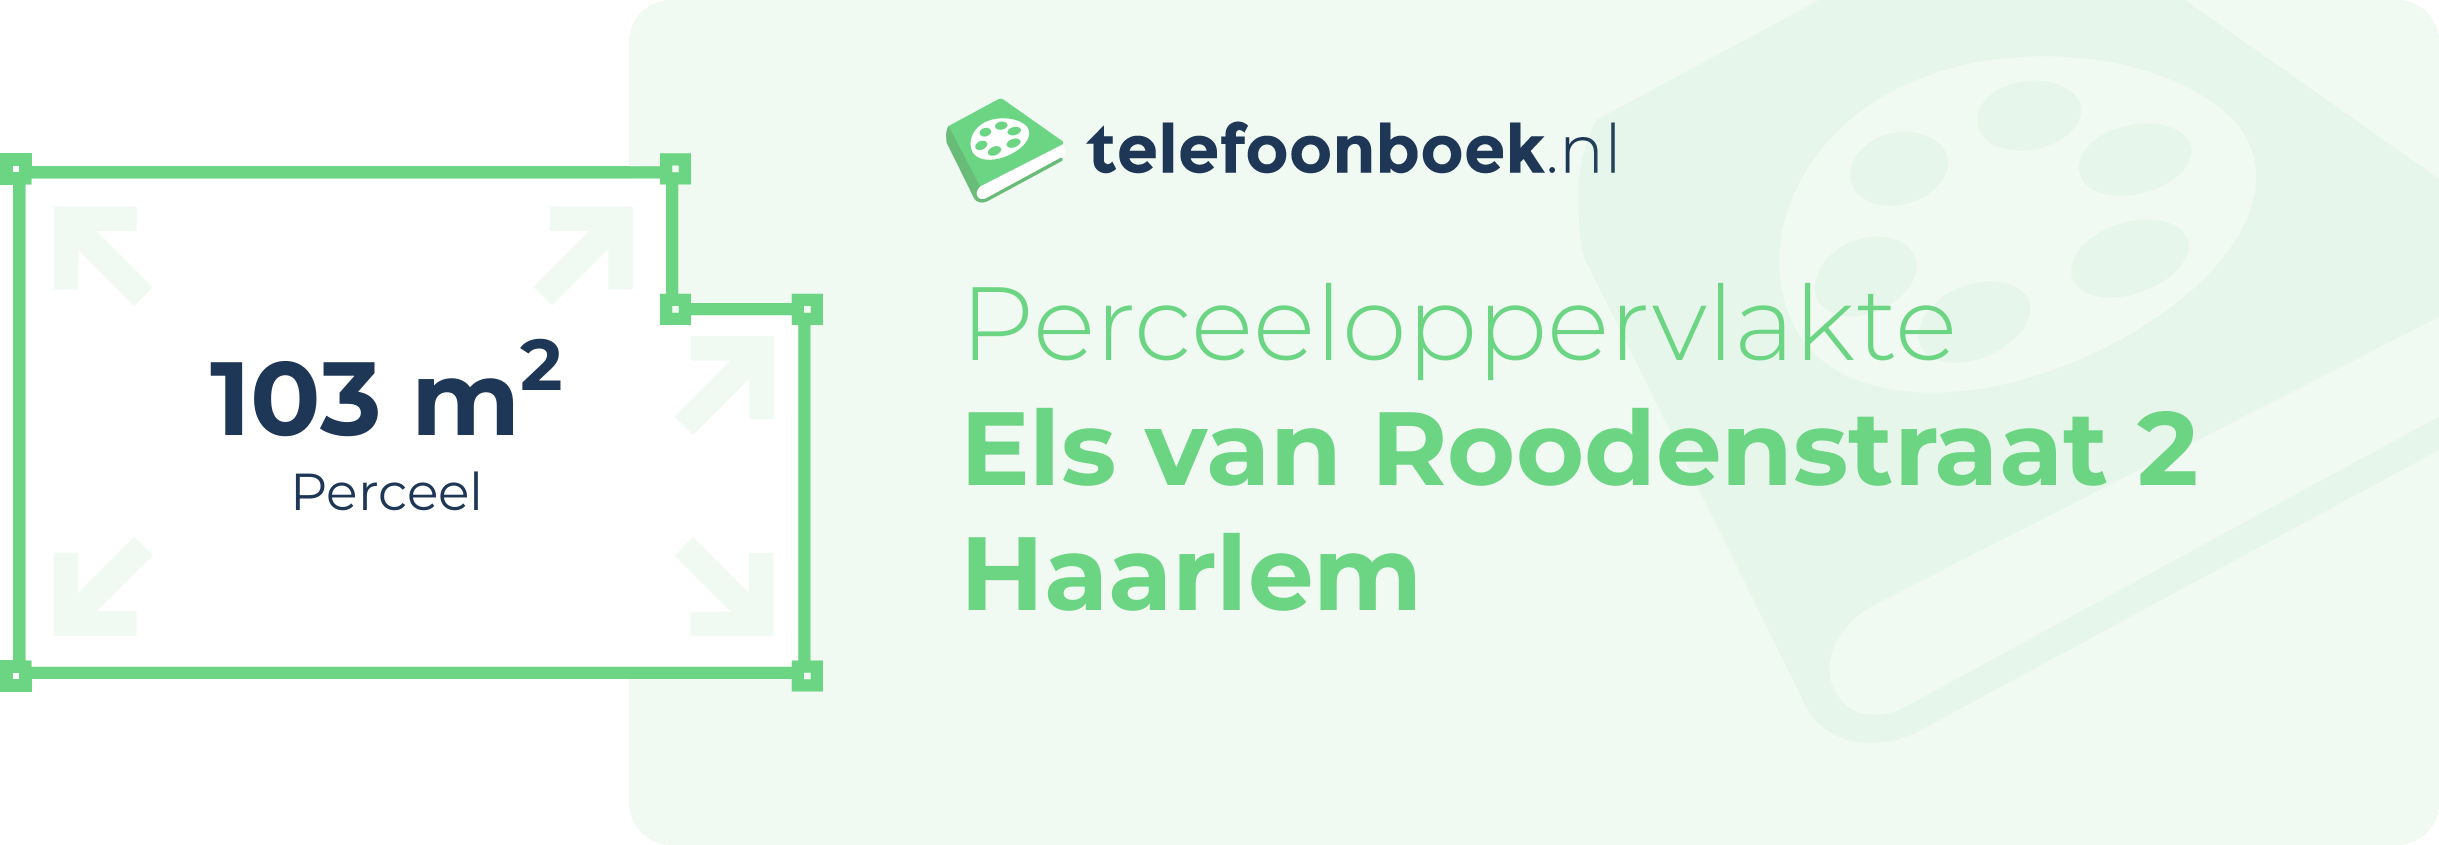 Perceeloppervlakte Els Van Roodenstraat 2 Haarlem